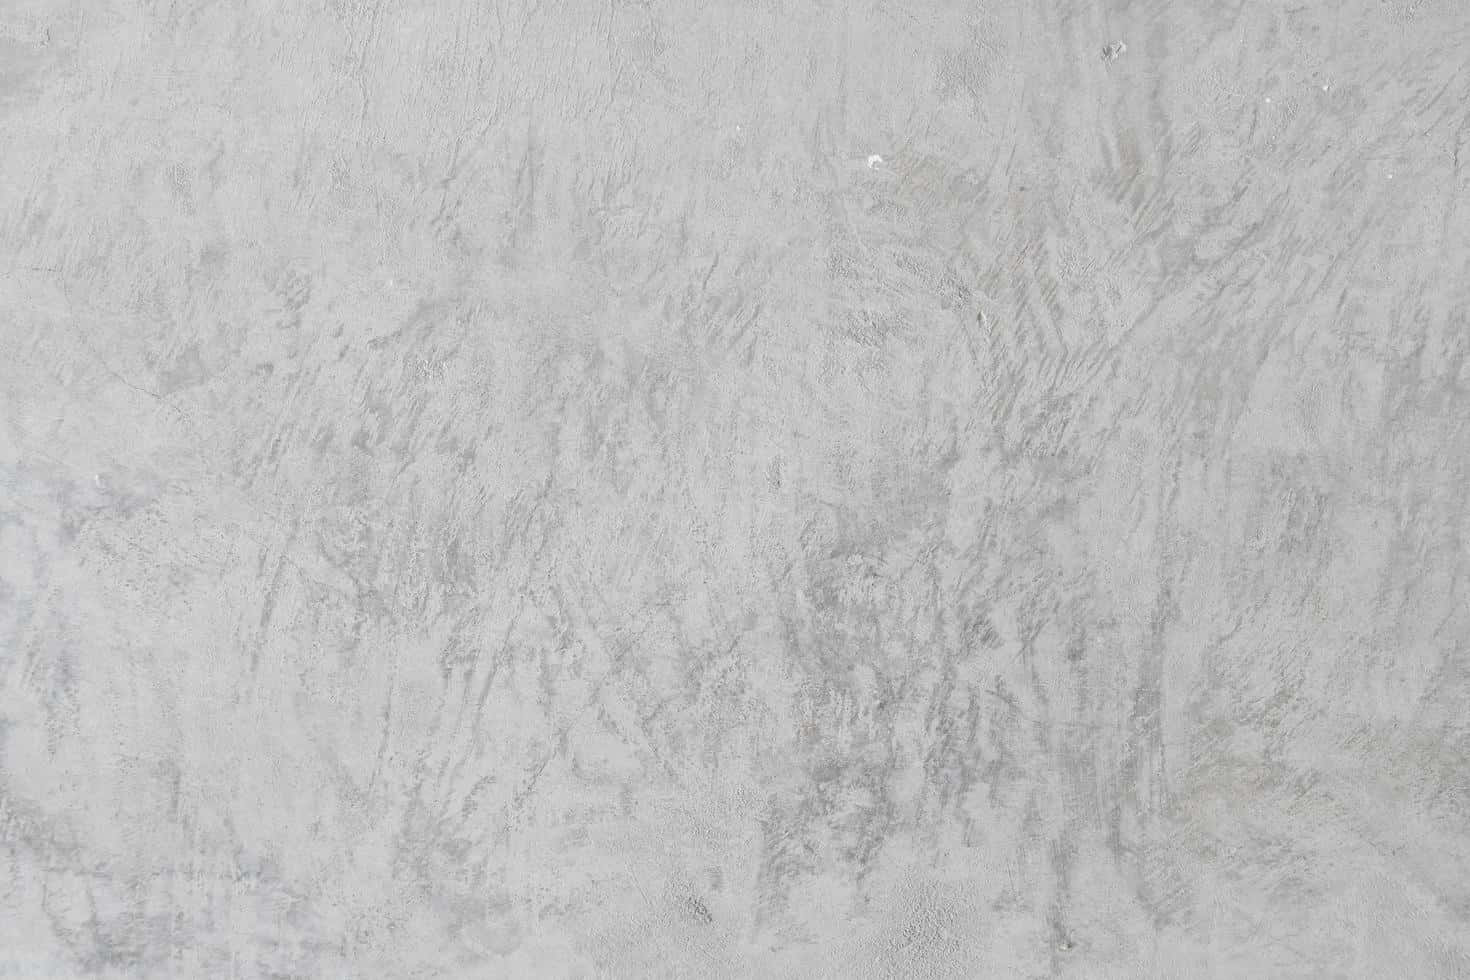 Imagende Textura De Concreto Decorativa En Color Blanco